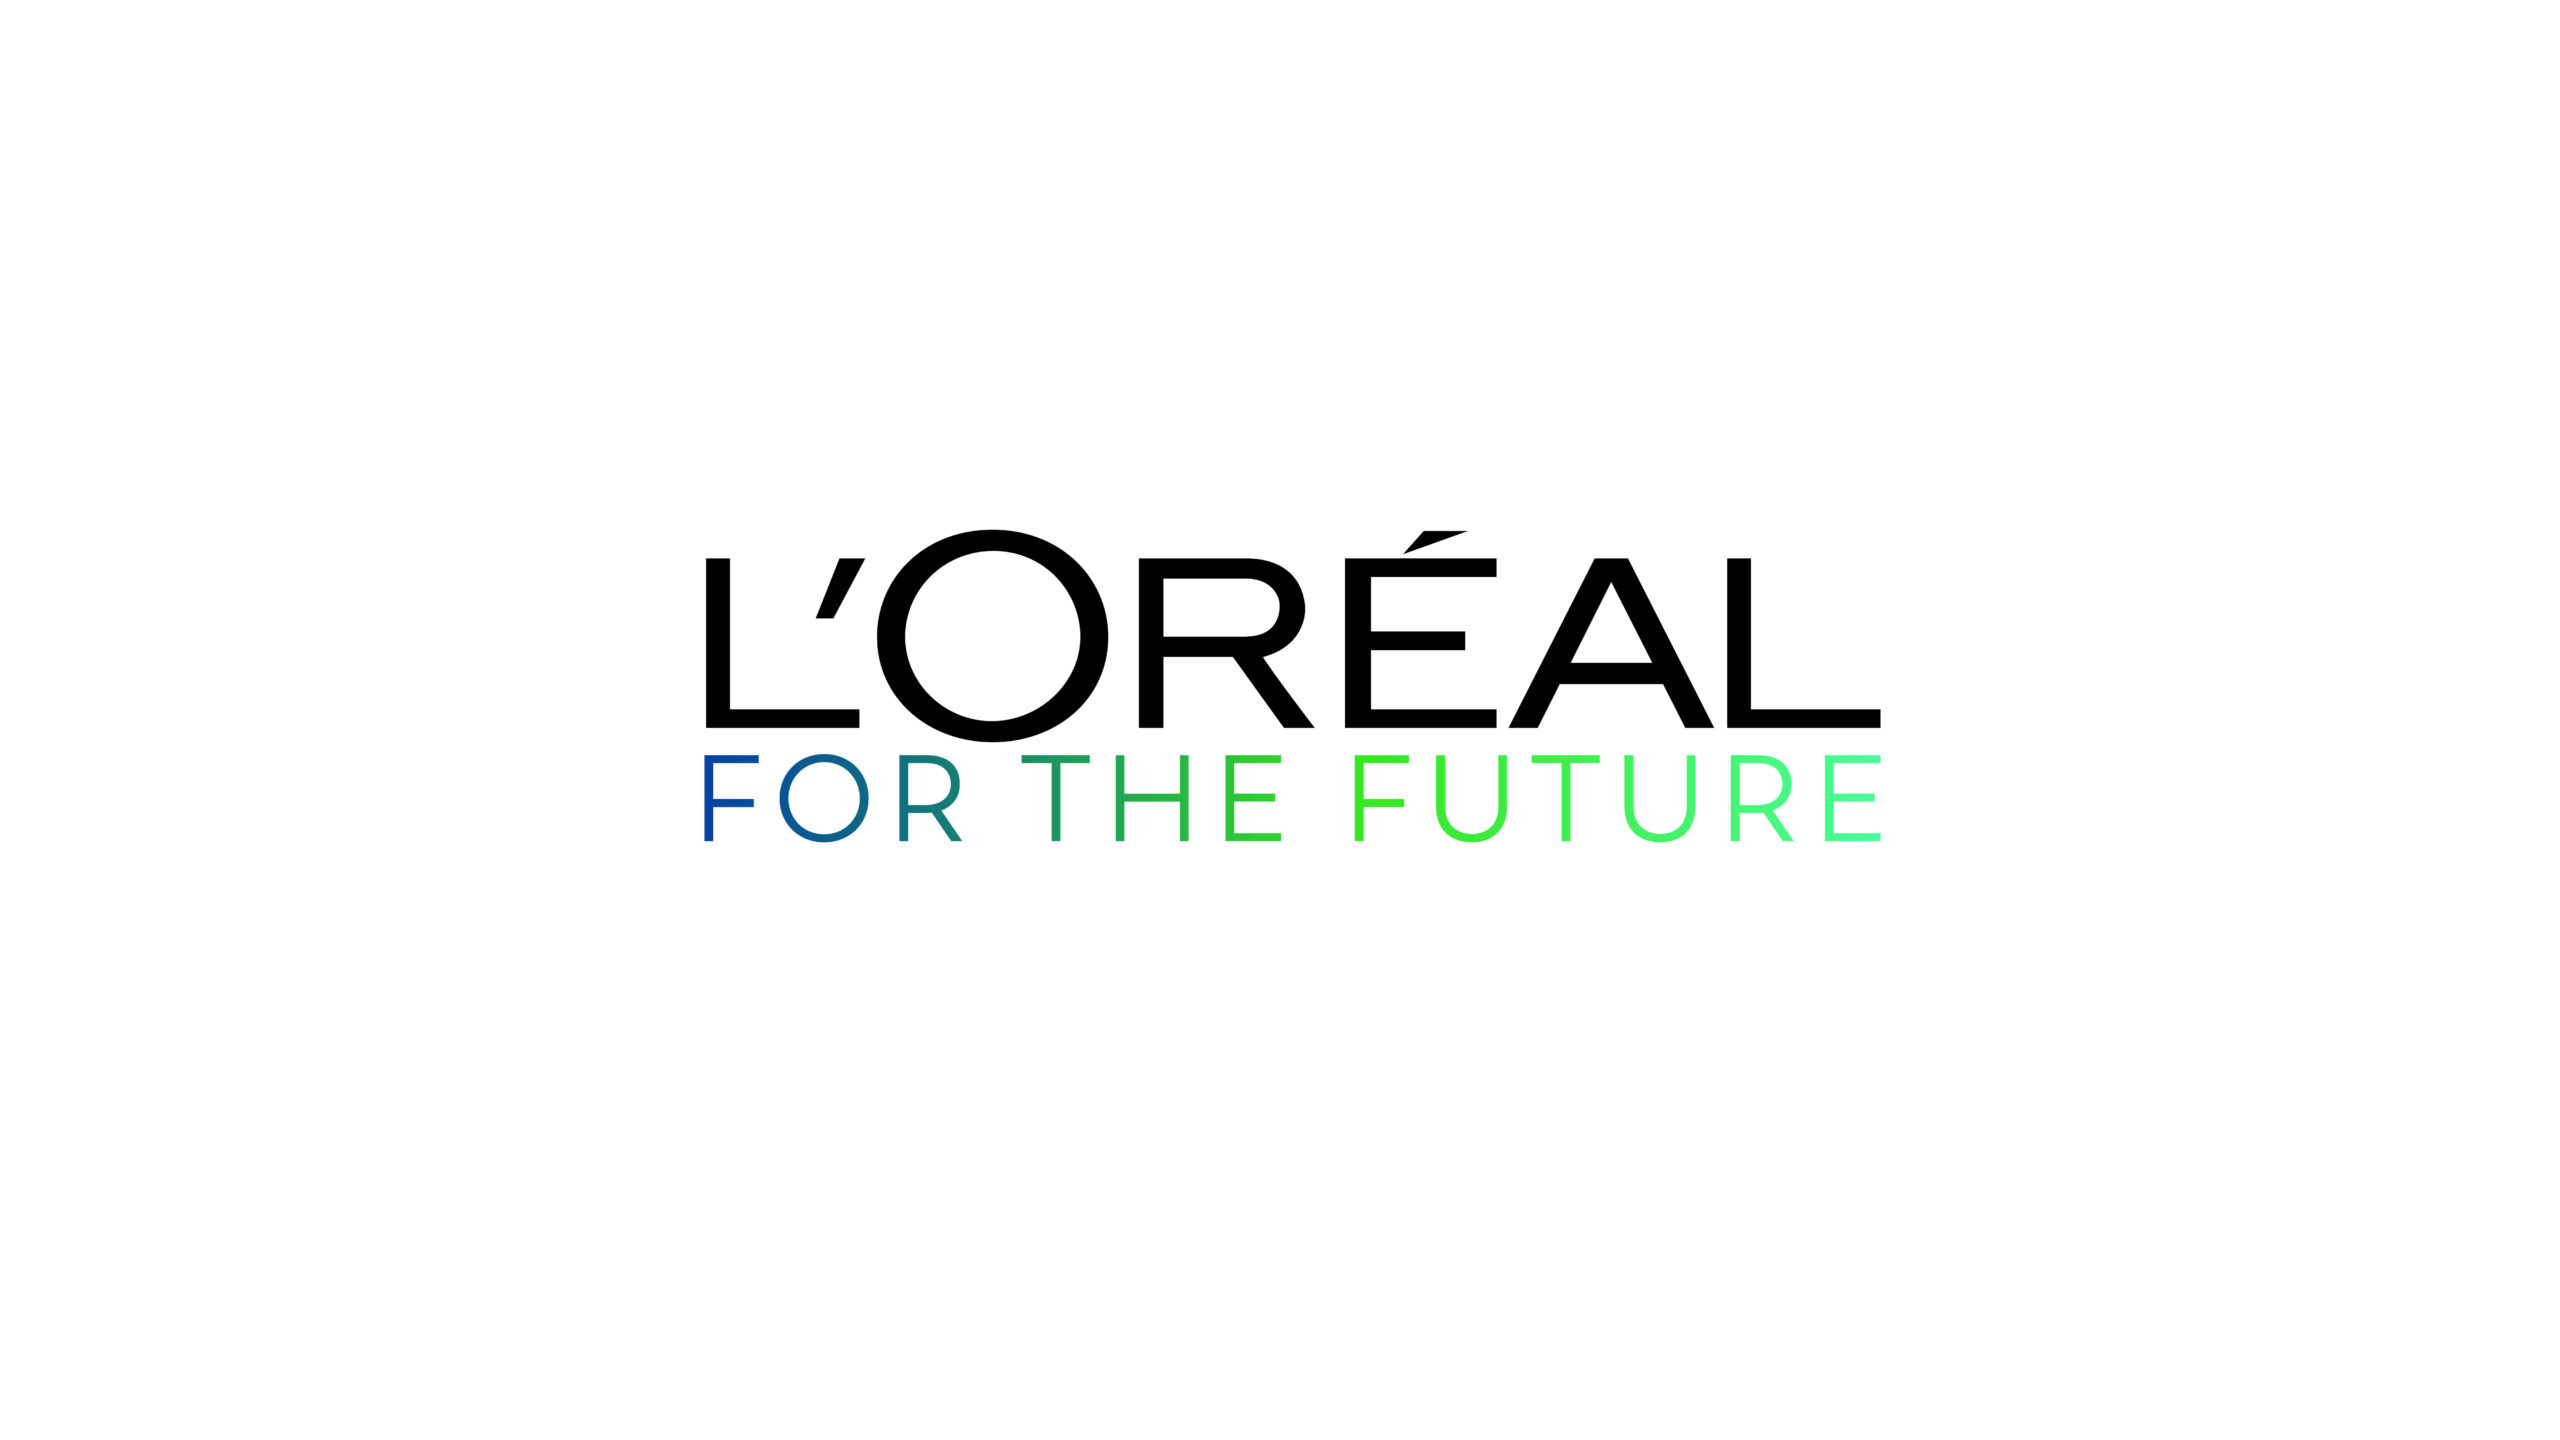 Οι φιλόδοξοι στόχοι της L’Oréal για τη βιωσιμότητα προς το 2030…